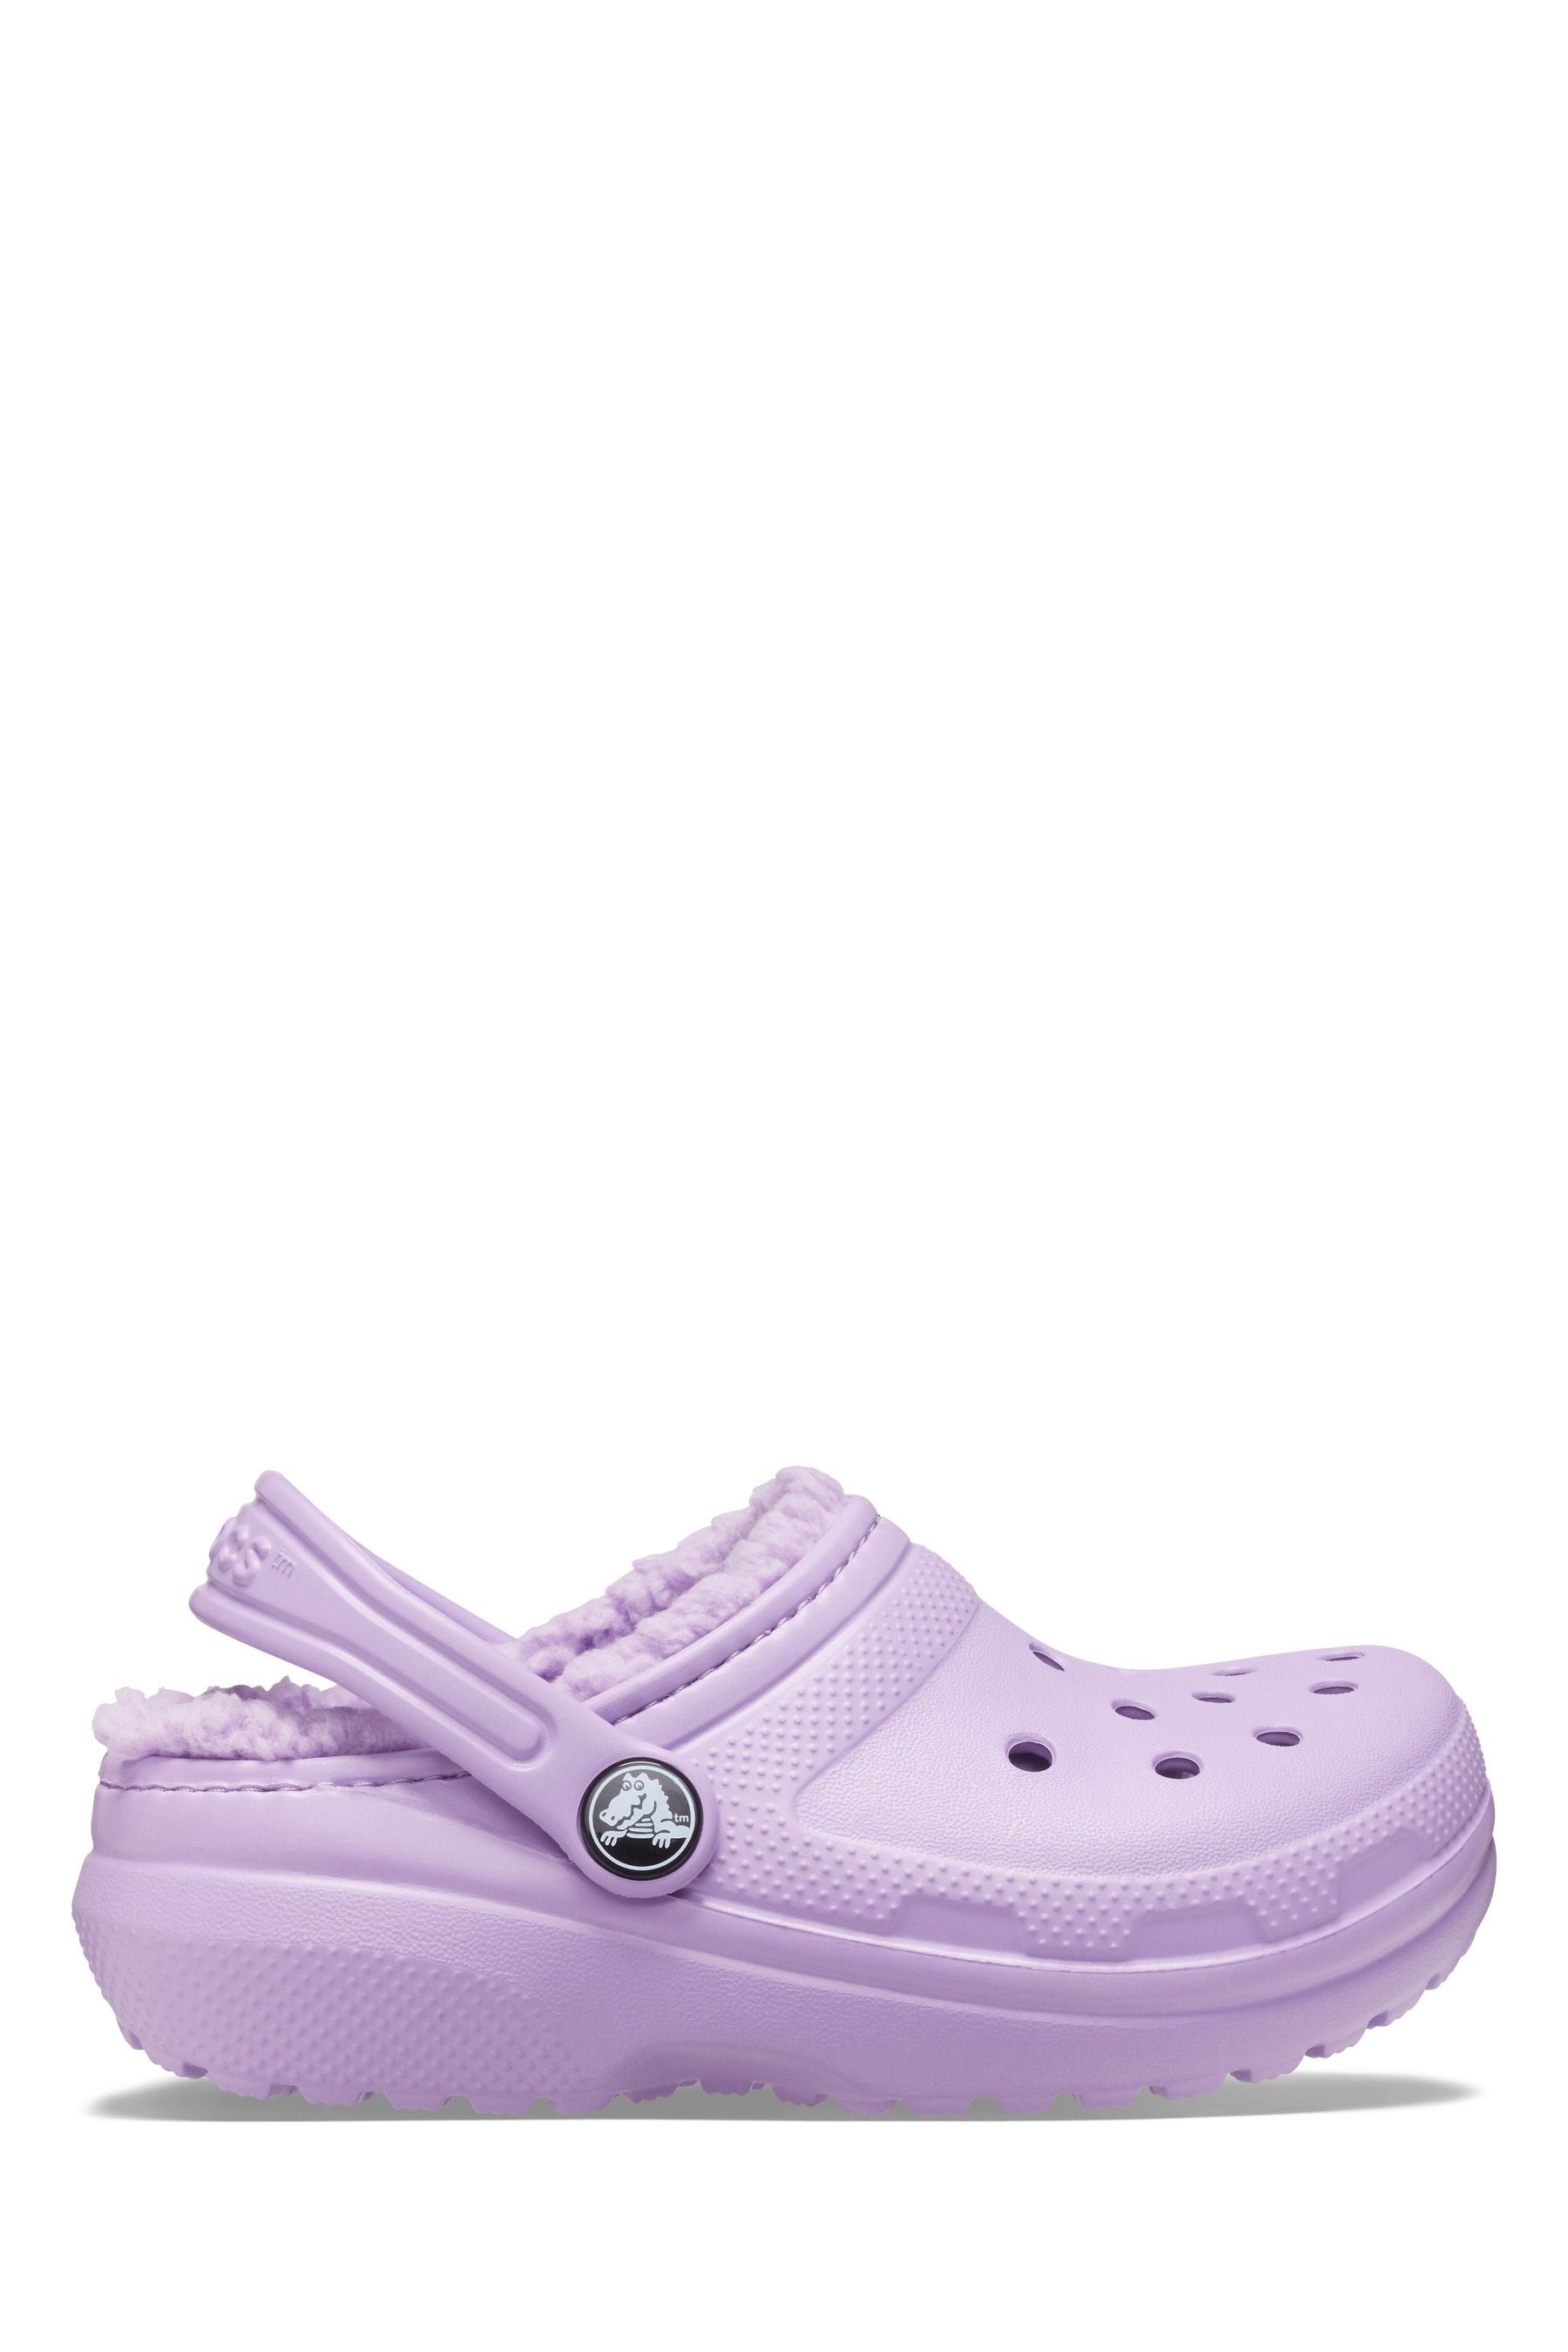 Детские классические босоножки-сабо на подкладке Crocs, фиолетовый